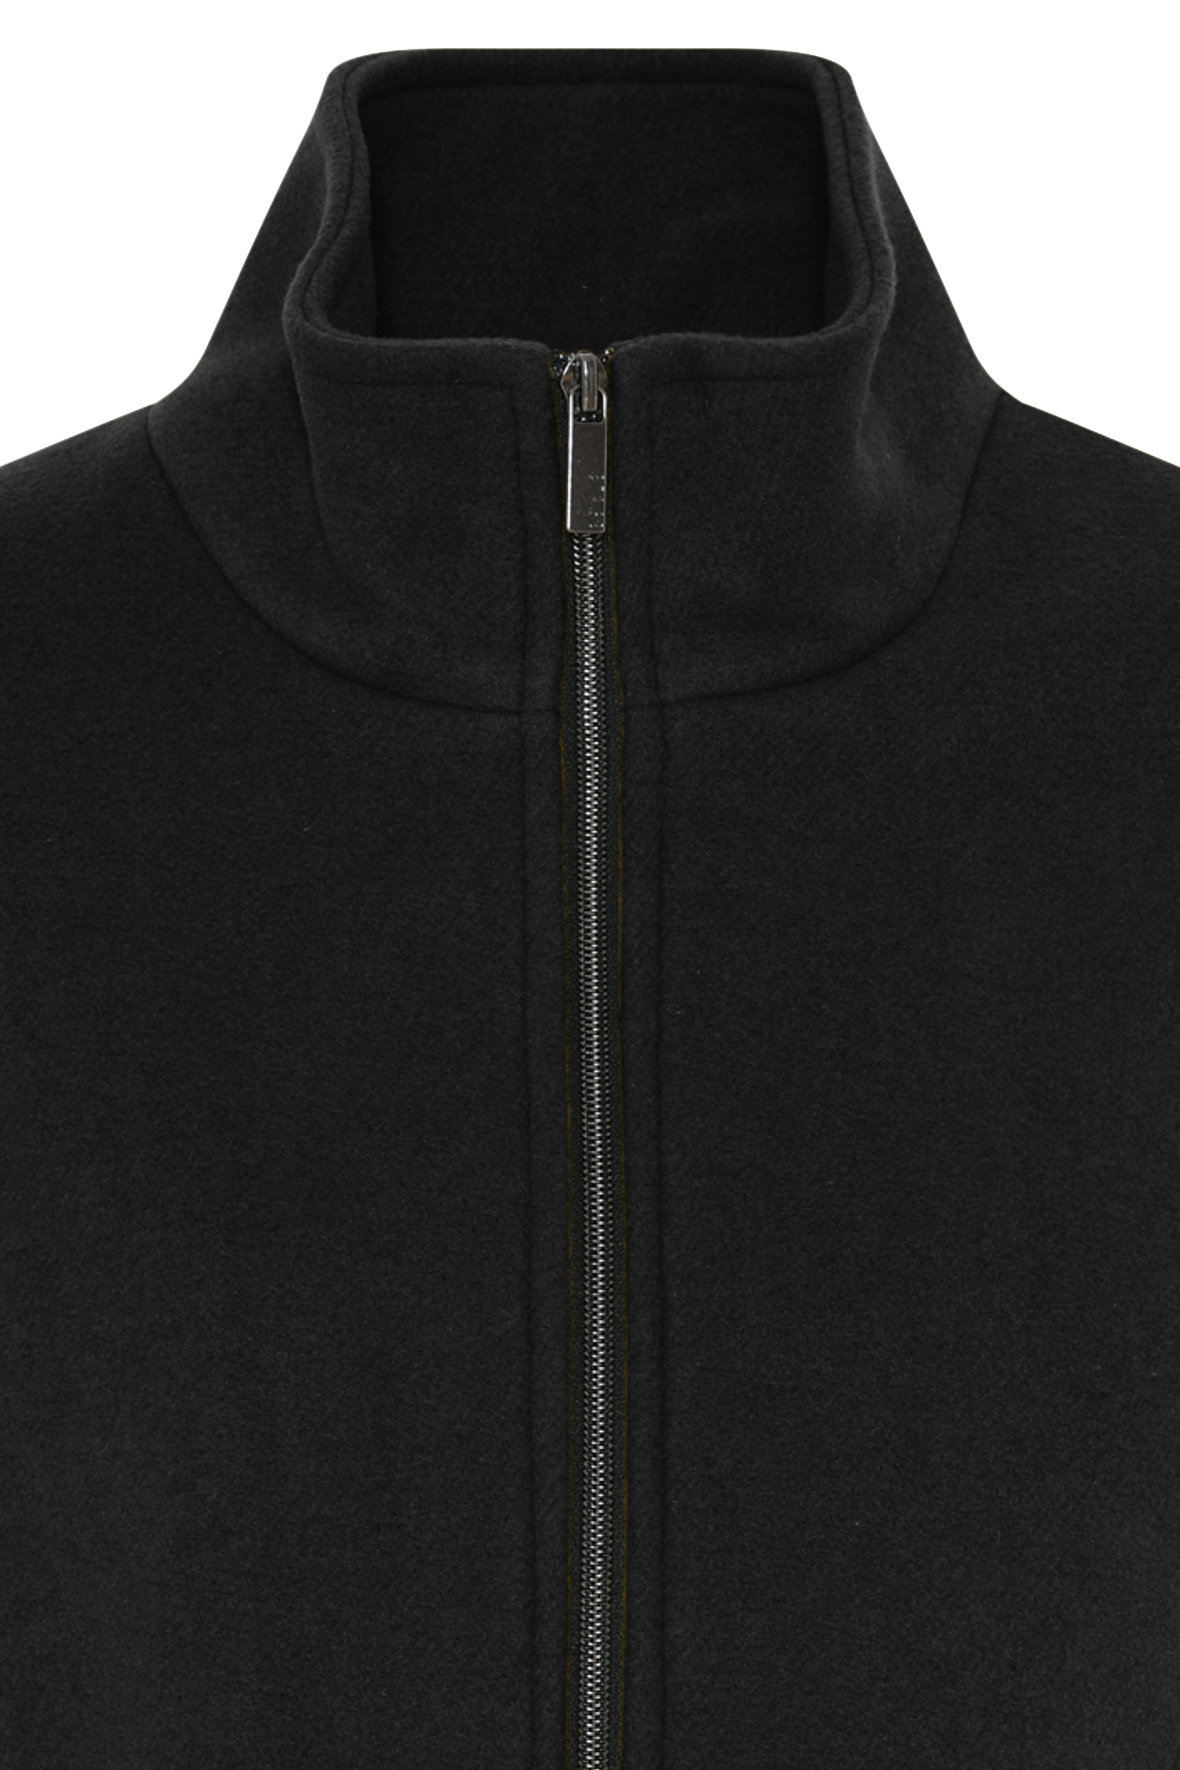 Etage Wool Zip Jacket - klassisk uldjakke sort til KVINDER - Hos Lohse